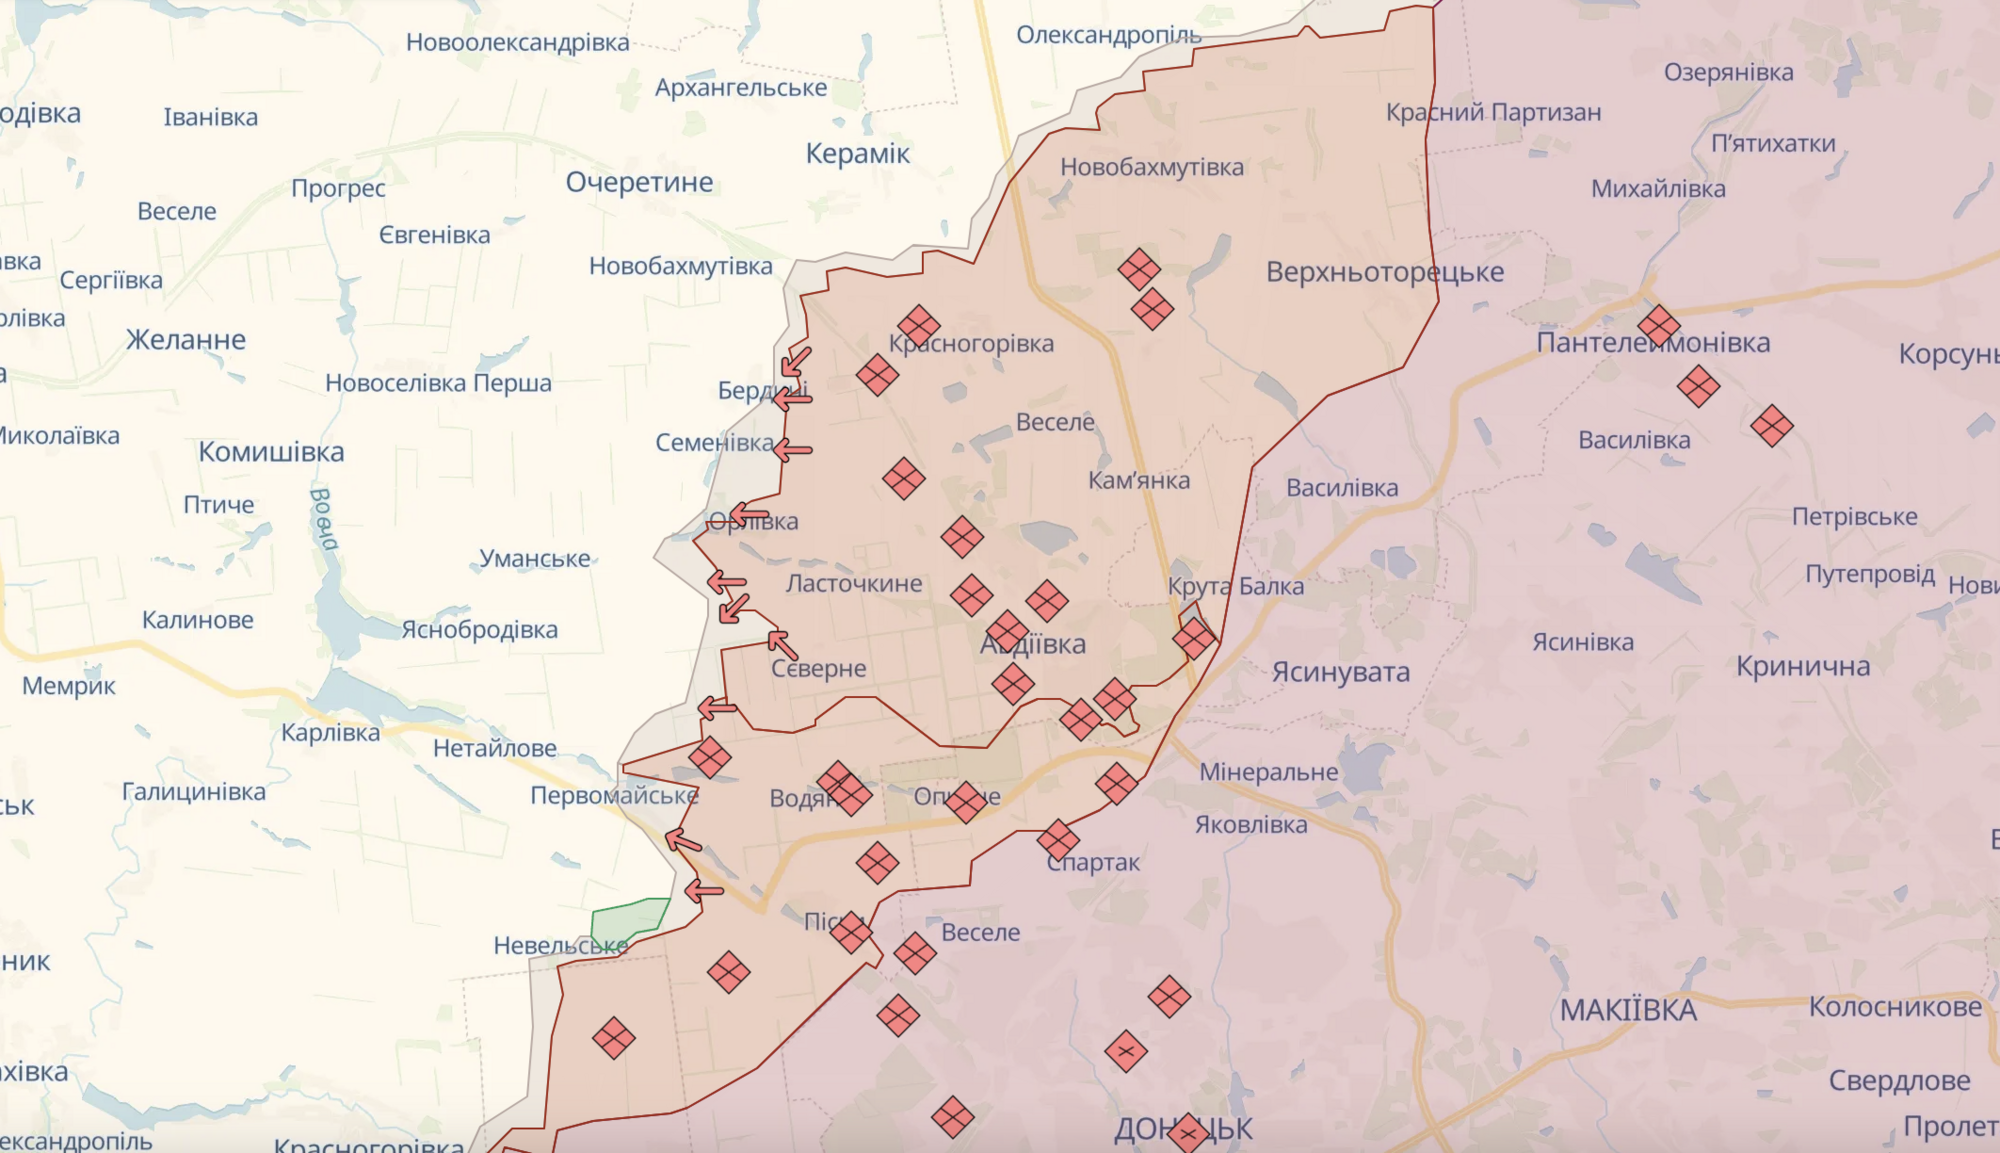 Russian army's advance near Avdiivka loses momentum: NYT names main reasons 